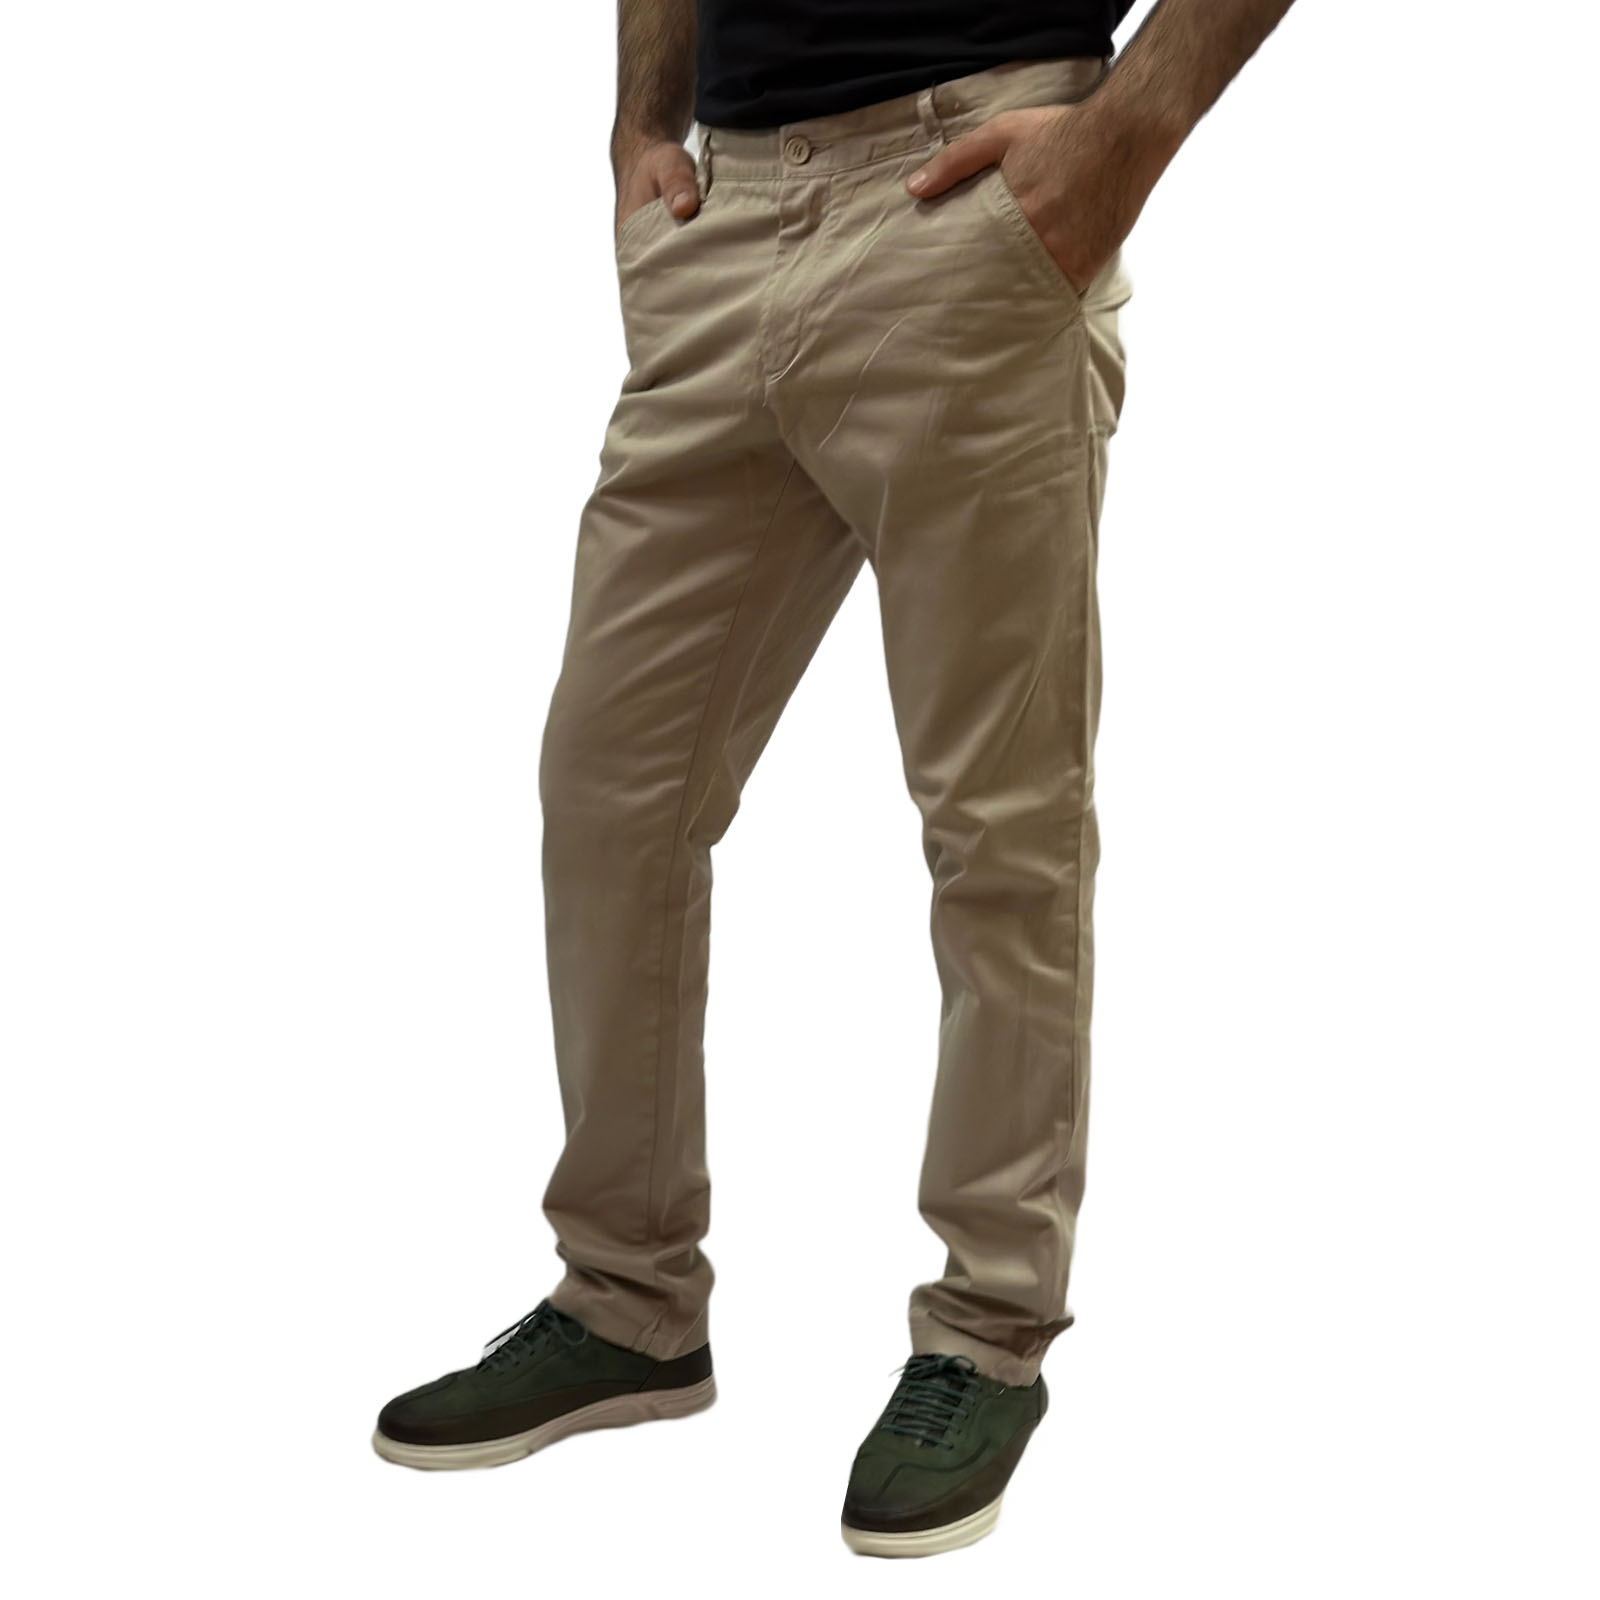 Мужские бежевые брюки от Connor - изготовлены из 98% хлопка с добавлением 2% эластана  №13